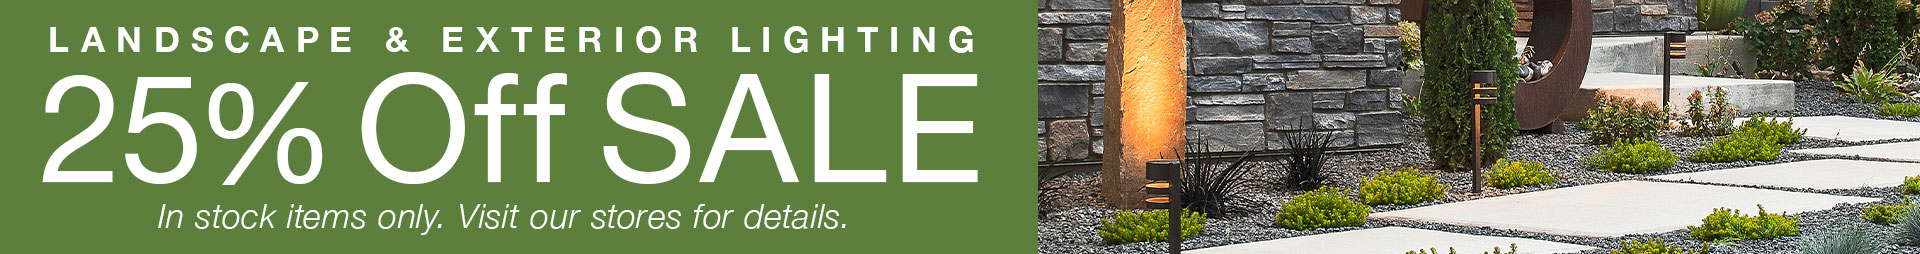 Landscape Lighting Promotion - Imagine More Stores